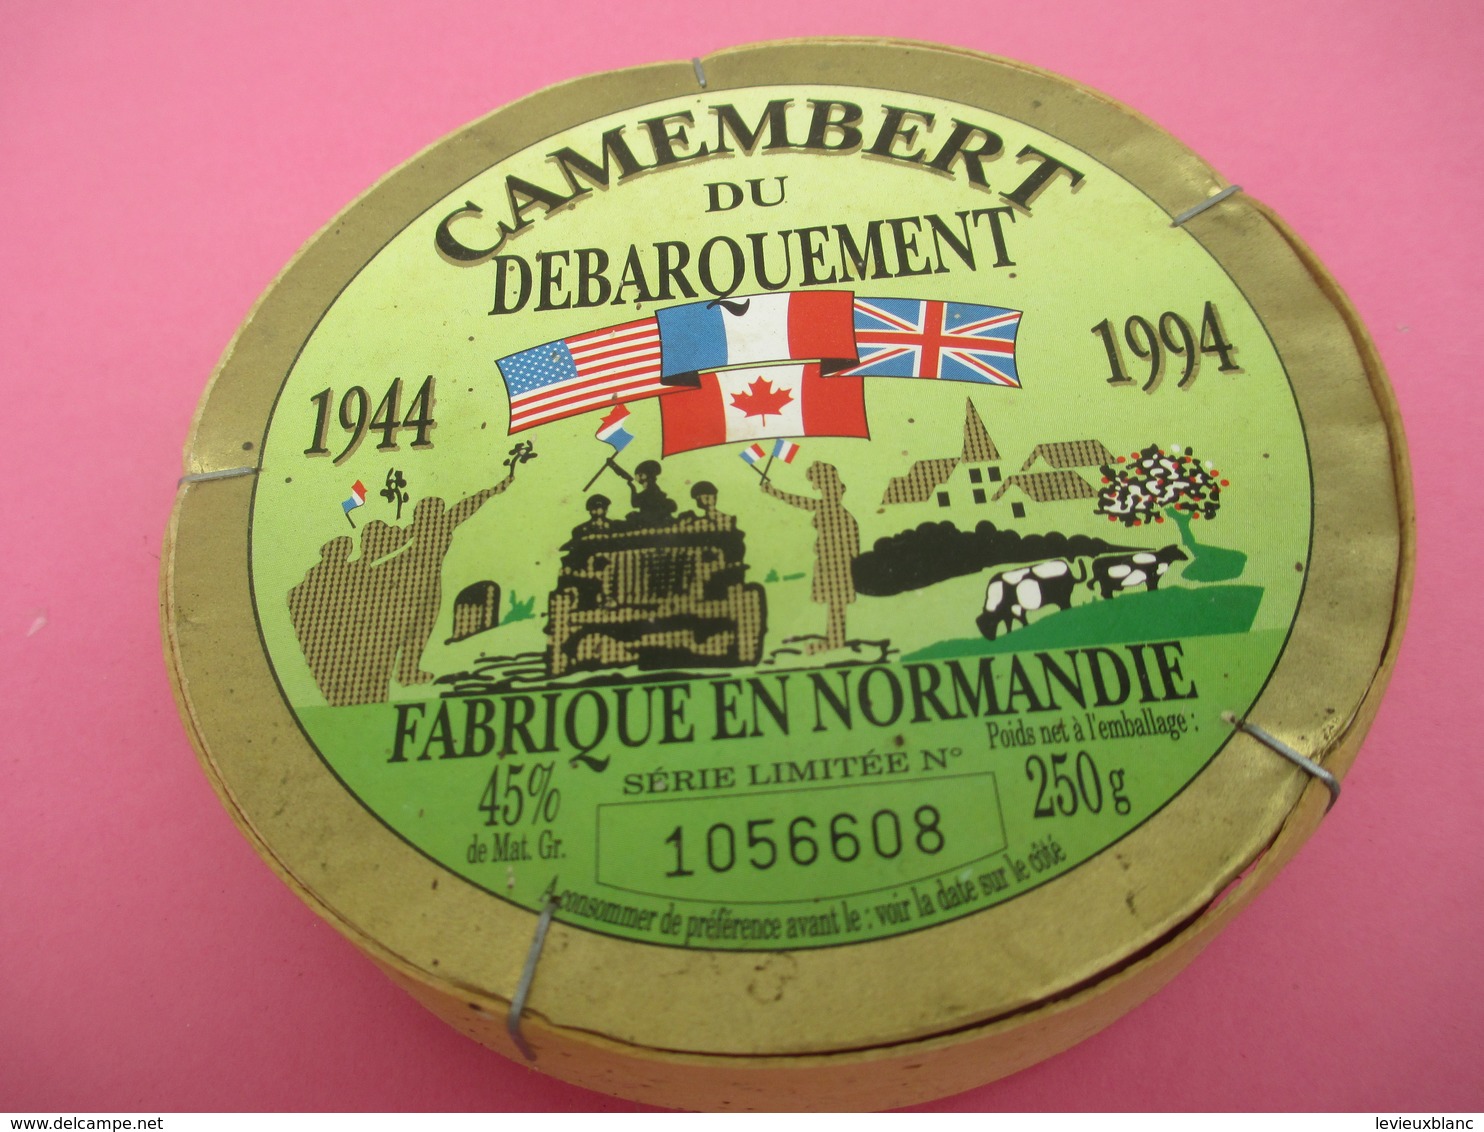 Boite De Camenbert Vide Mais Entière/Camenbert Du DEBARQUEMENT/Cinquantenaire/ Fabriqué En Normandie/1994      FROM44 - Käse